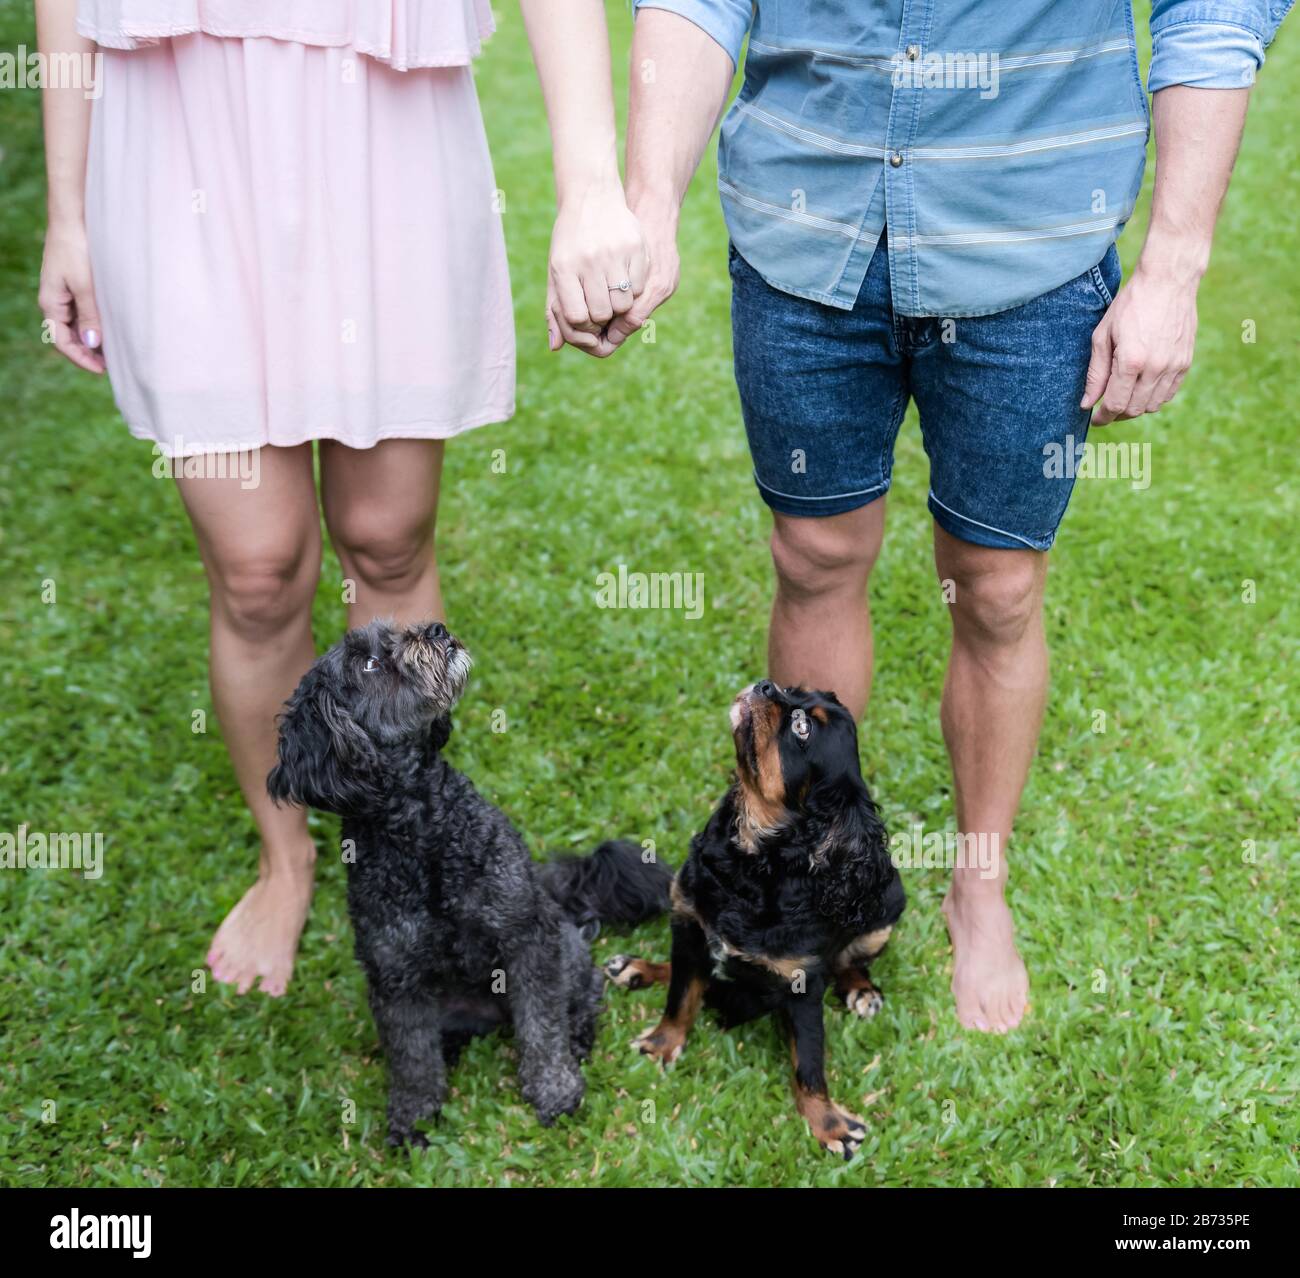 Portrait d'engagement familial présentant la moitié inférieure d'un couple engagé avec ses chiens d'animal de compagnie très intéressés dans un champ herbacé à Cairns, dans le Queensland. Banque D'Images